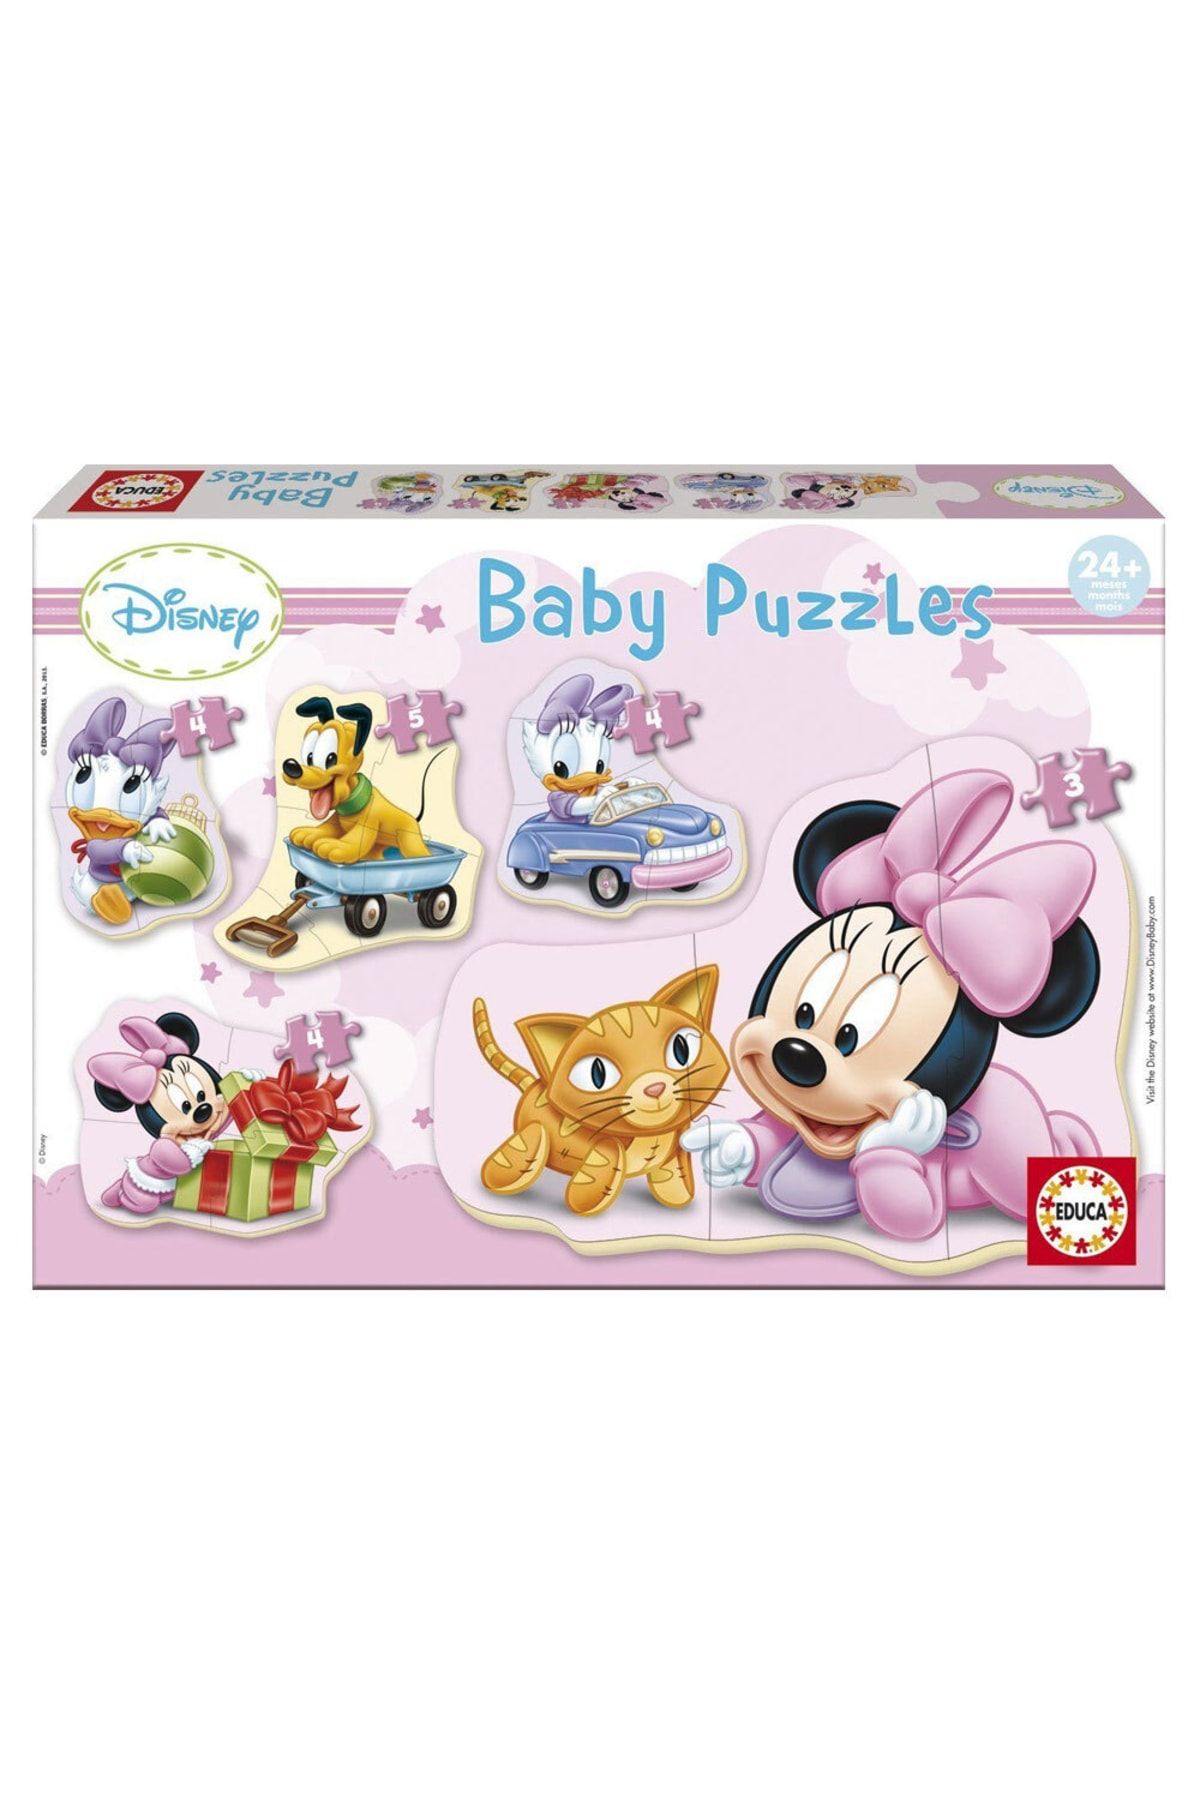 Educa-Borras Baby Puzzles Bebés Disney